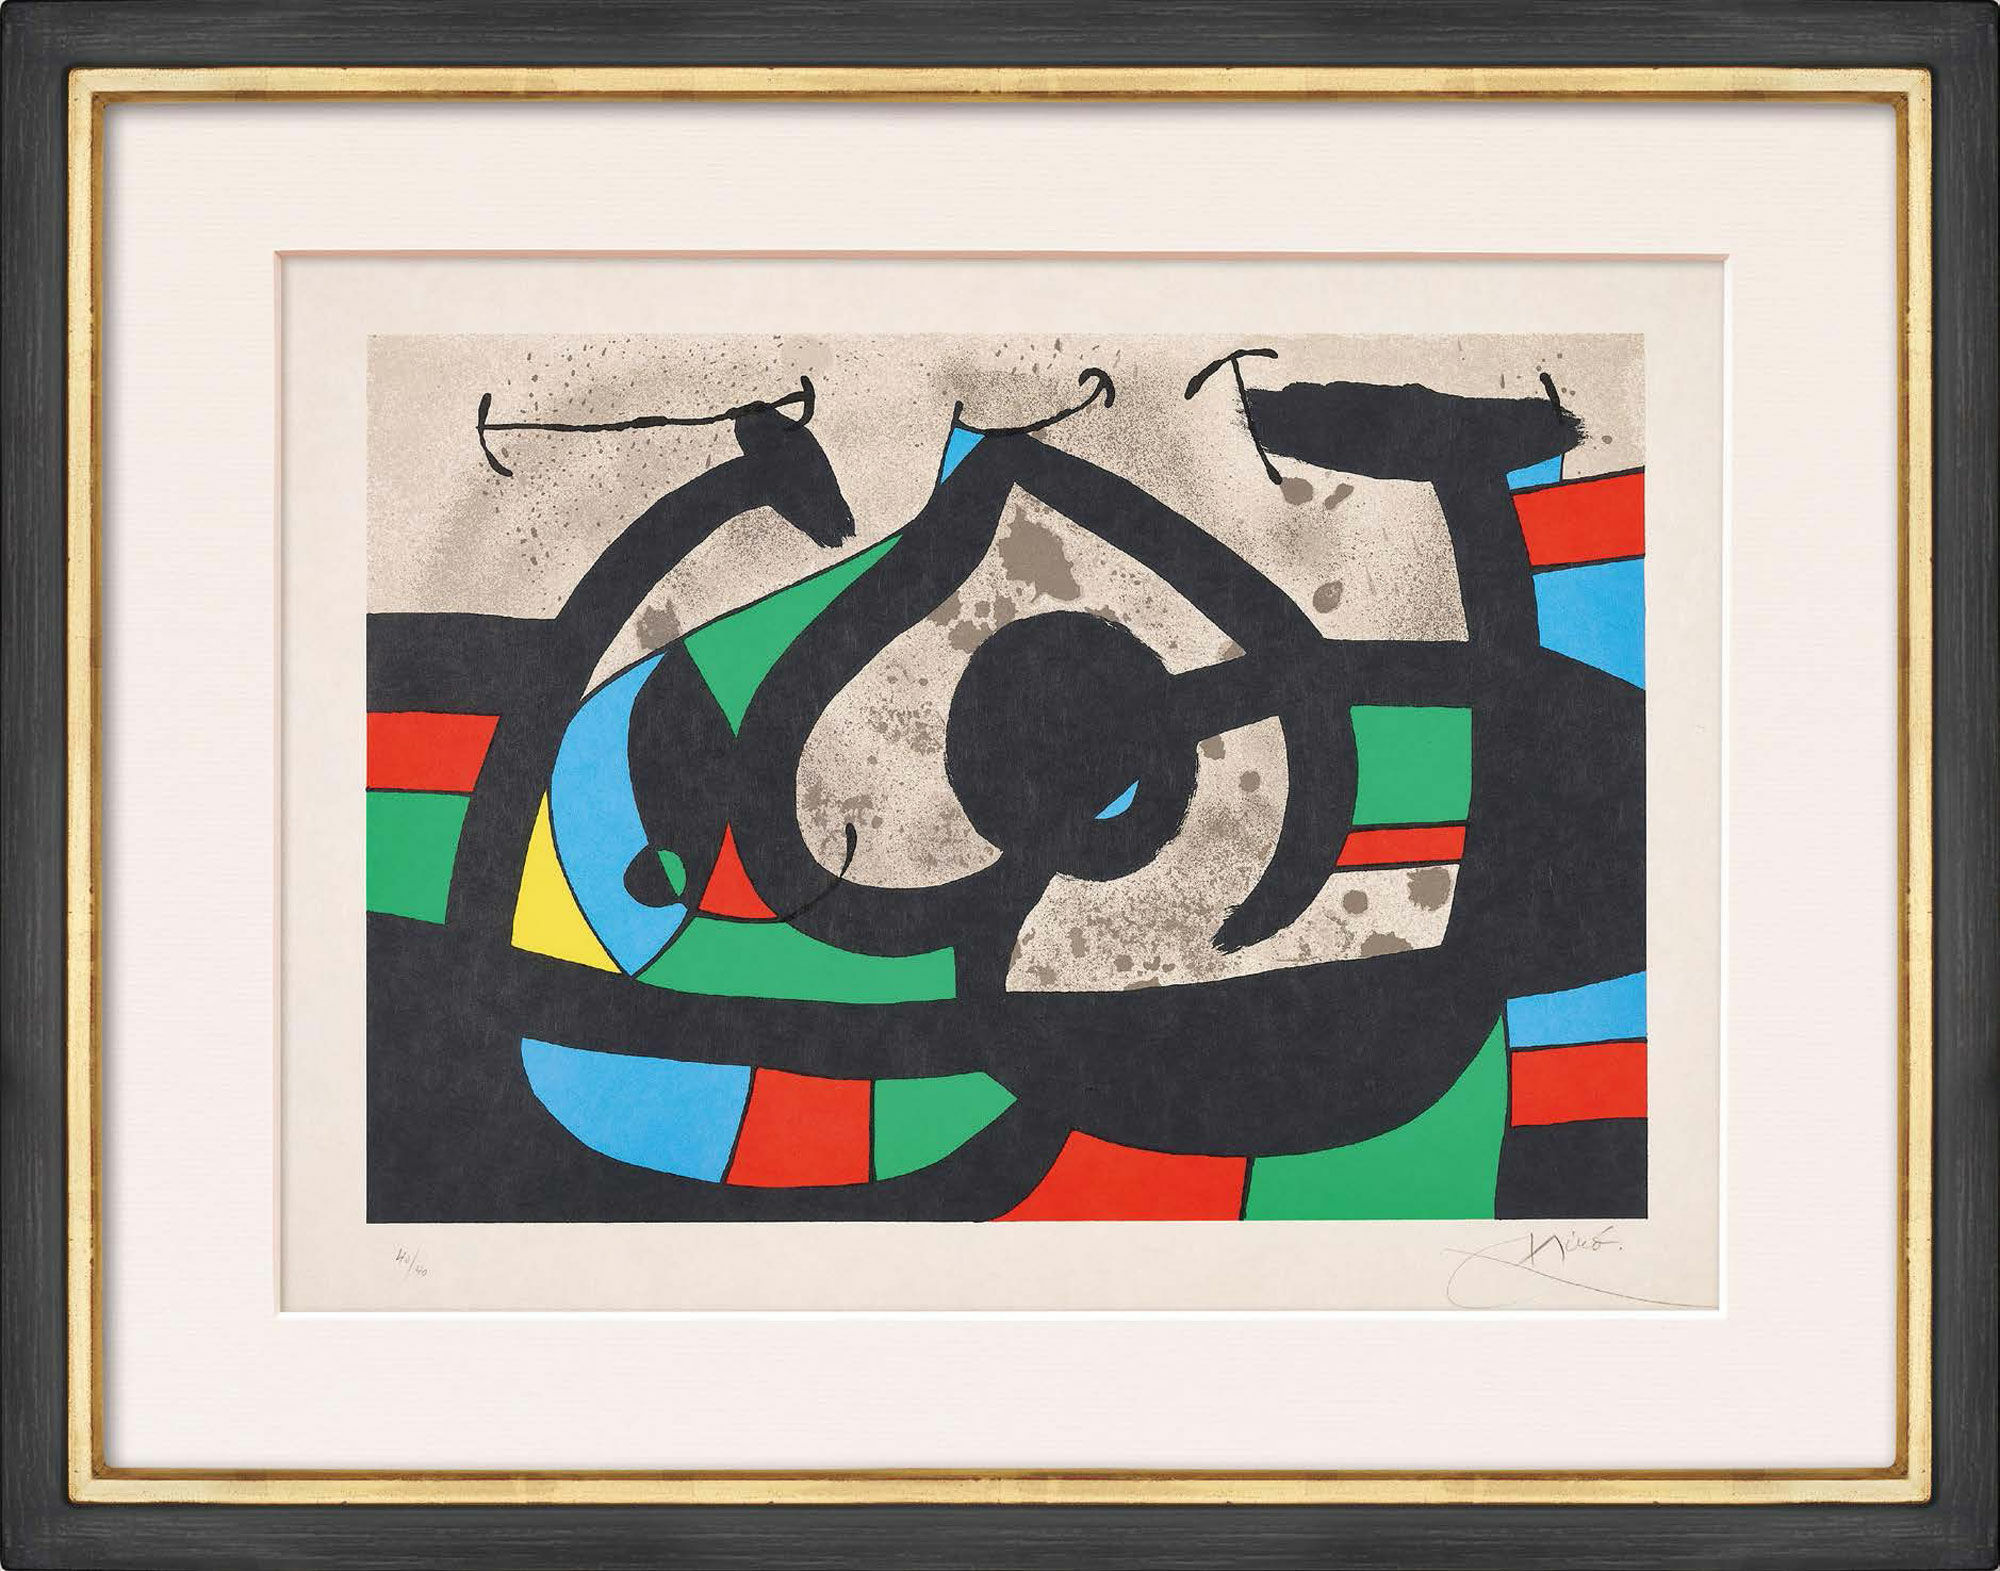 Picture "Le lézard aux plumes d’or" (1971) by Joan Miró